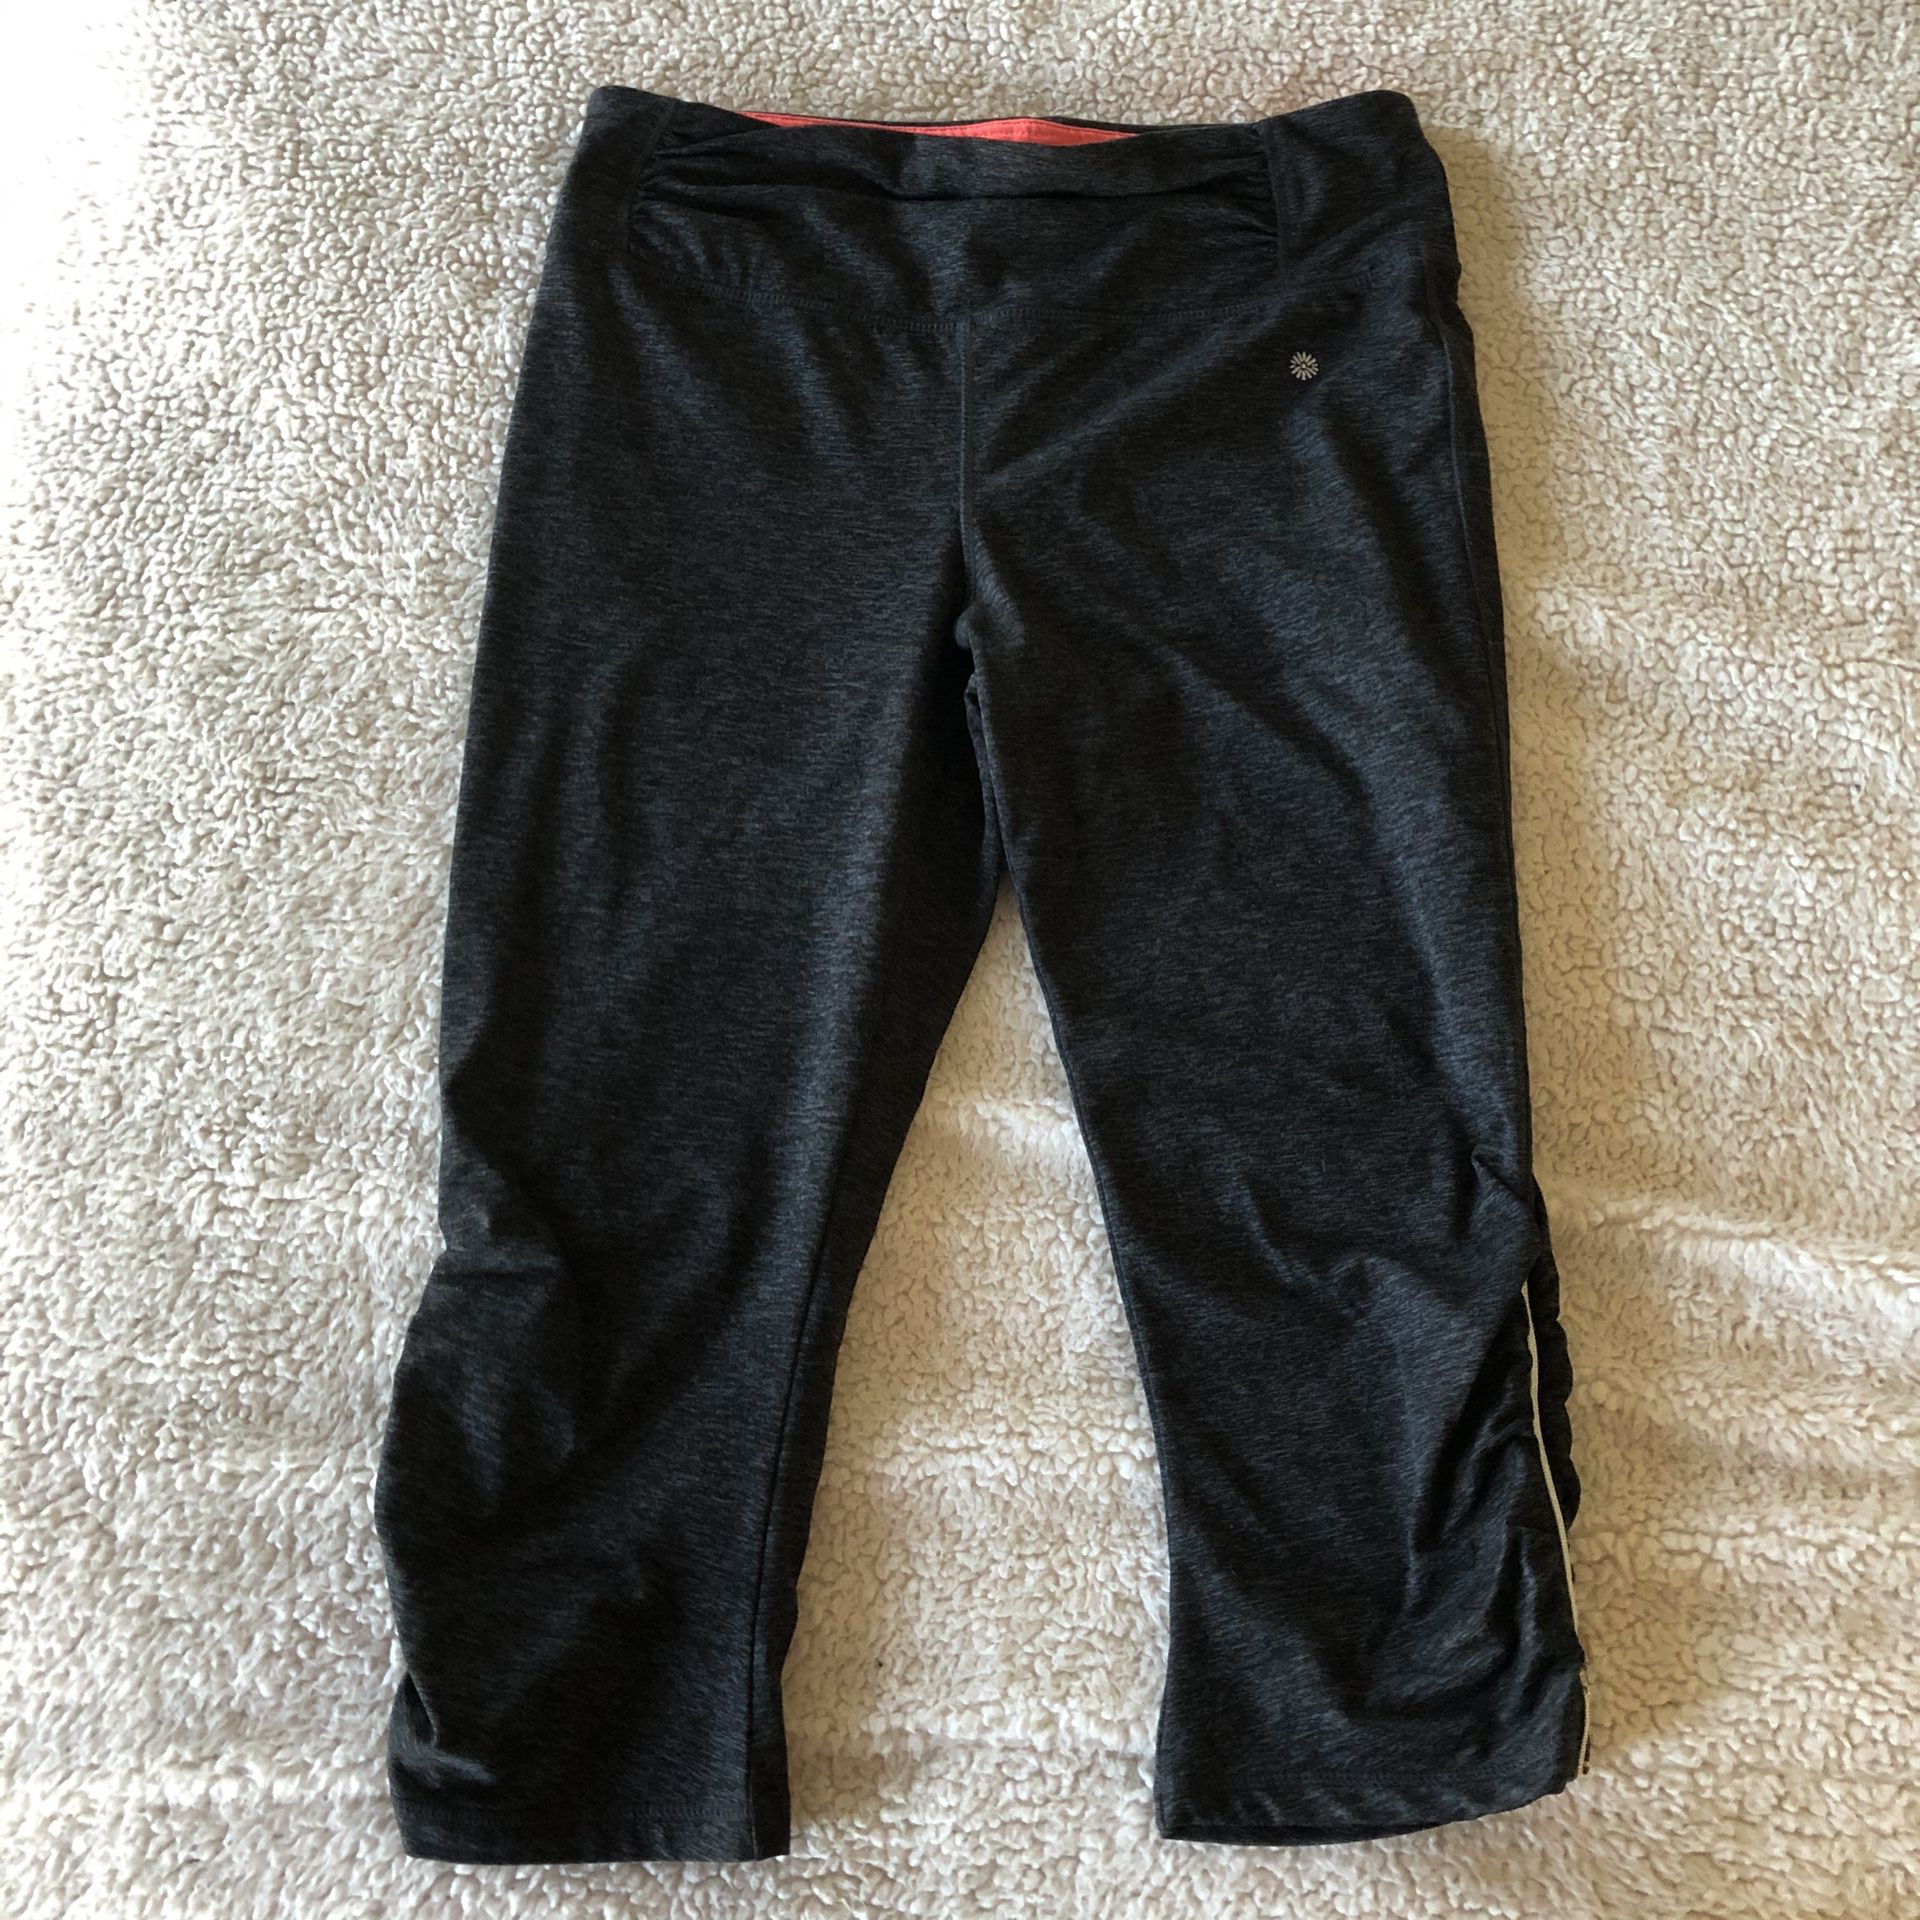 Size L Heather Gray / Salmon Colored Capri Workout Pants